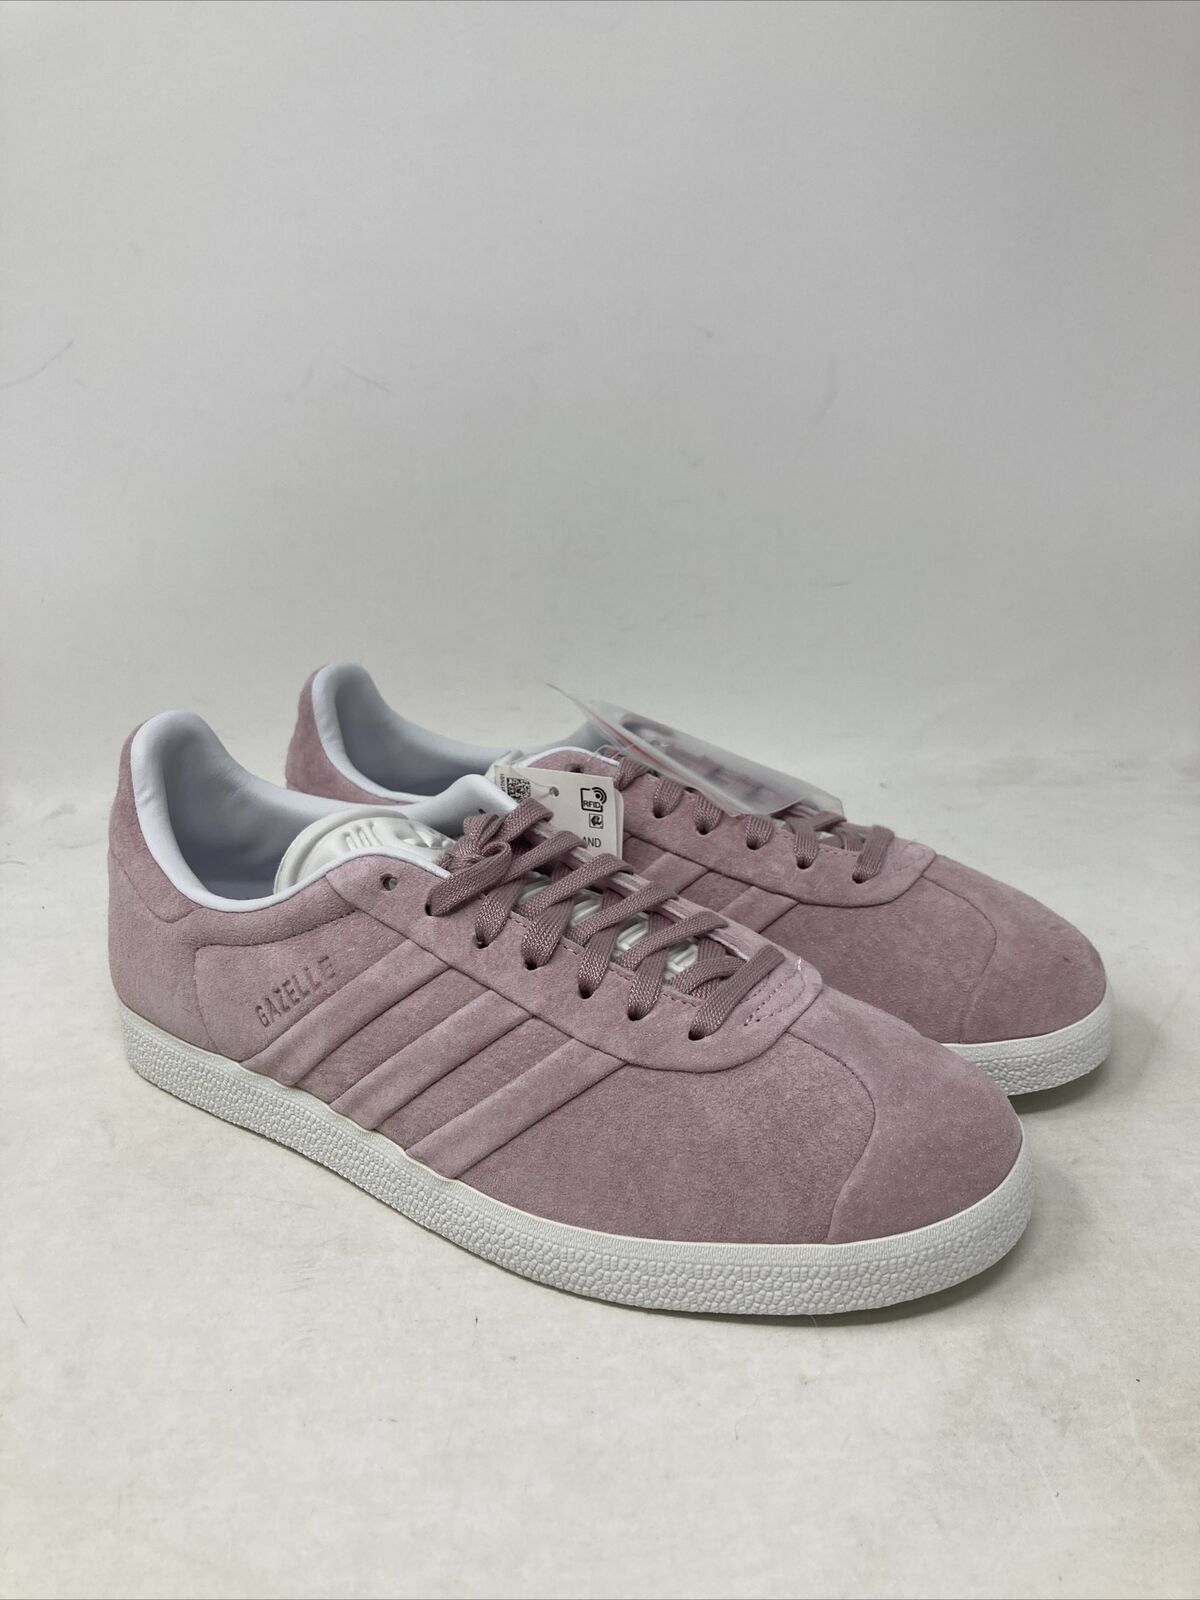 Adidas Women’s Gazelle Sneaker Size 7.5 US Pink Suede